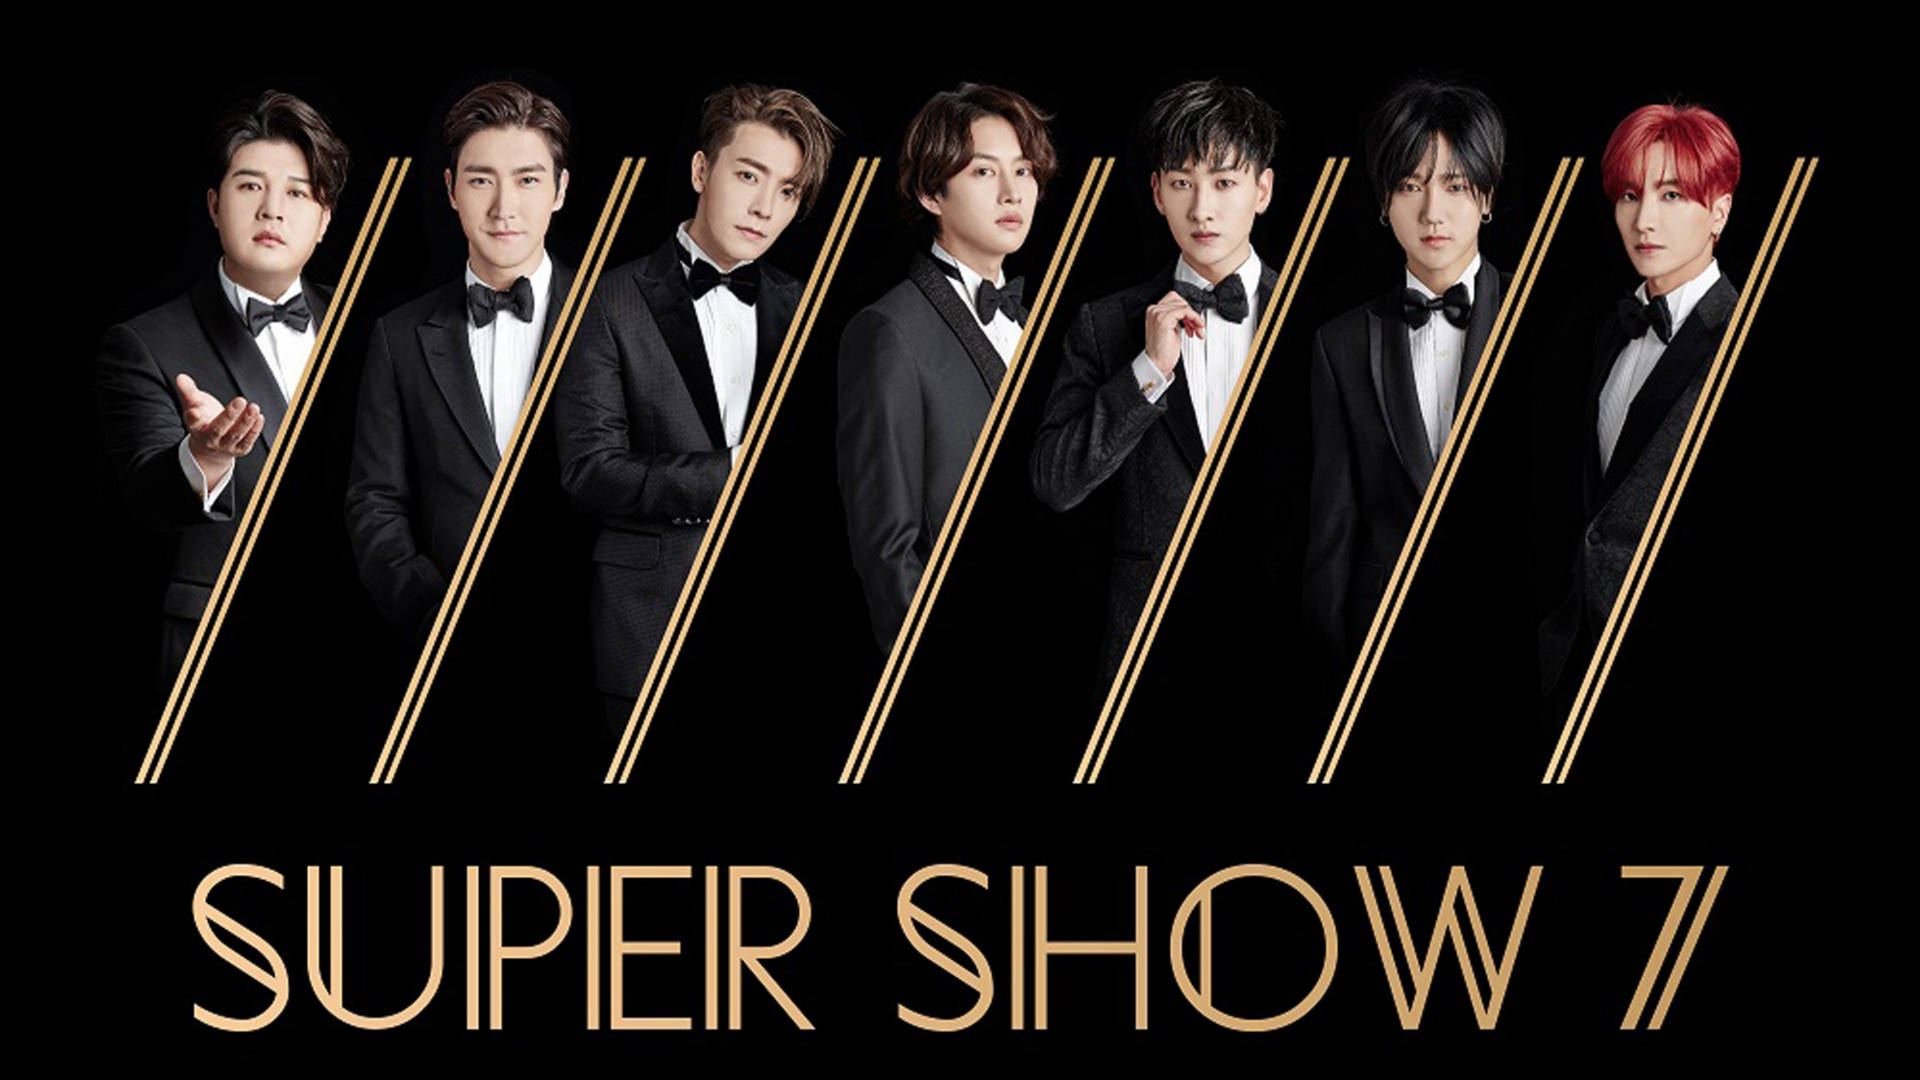 Superjunior Super Show 7 - Super Junior Super Show 7 Wallpaper